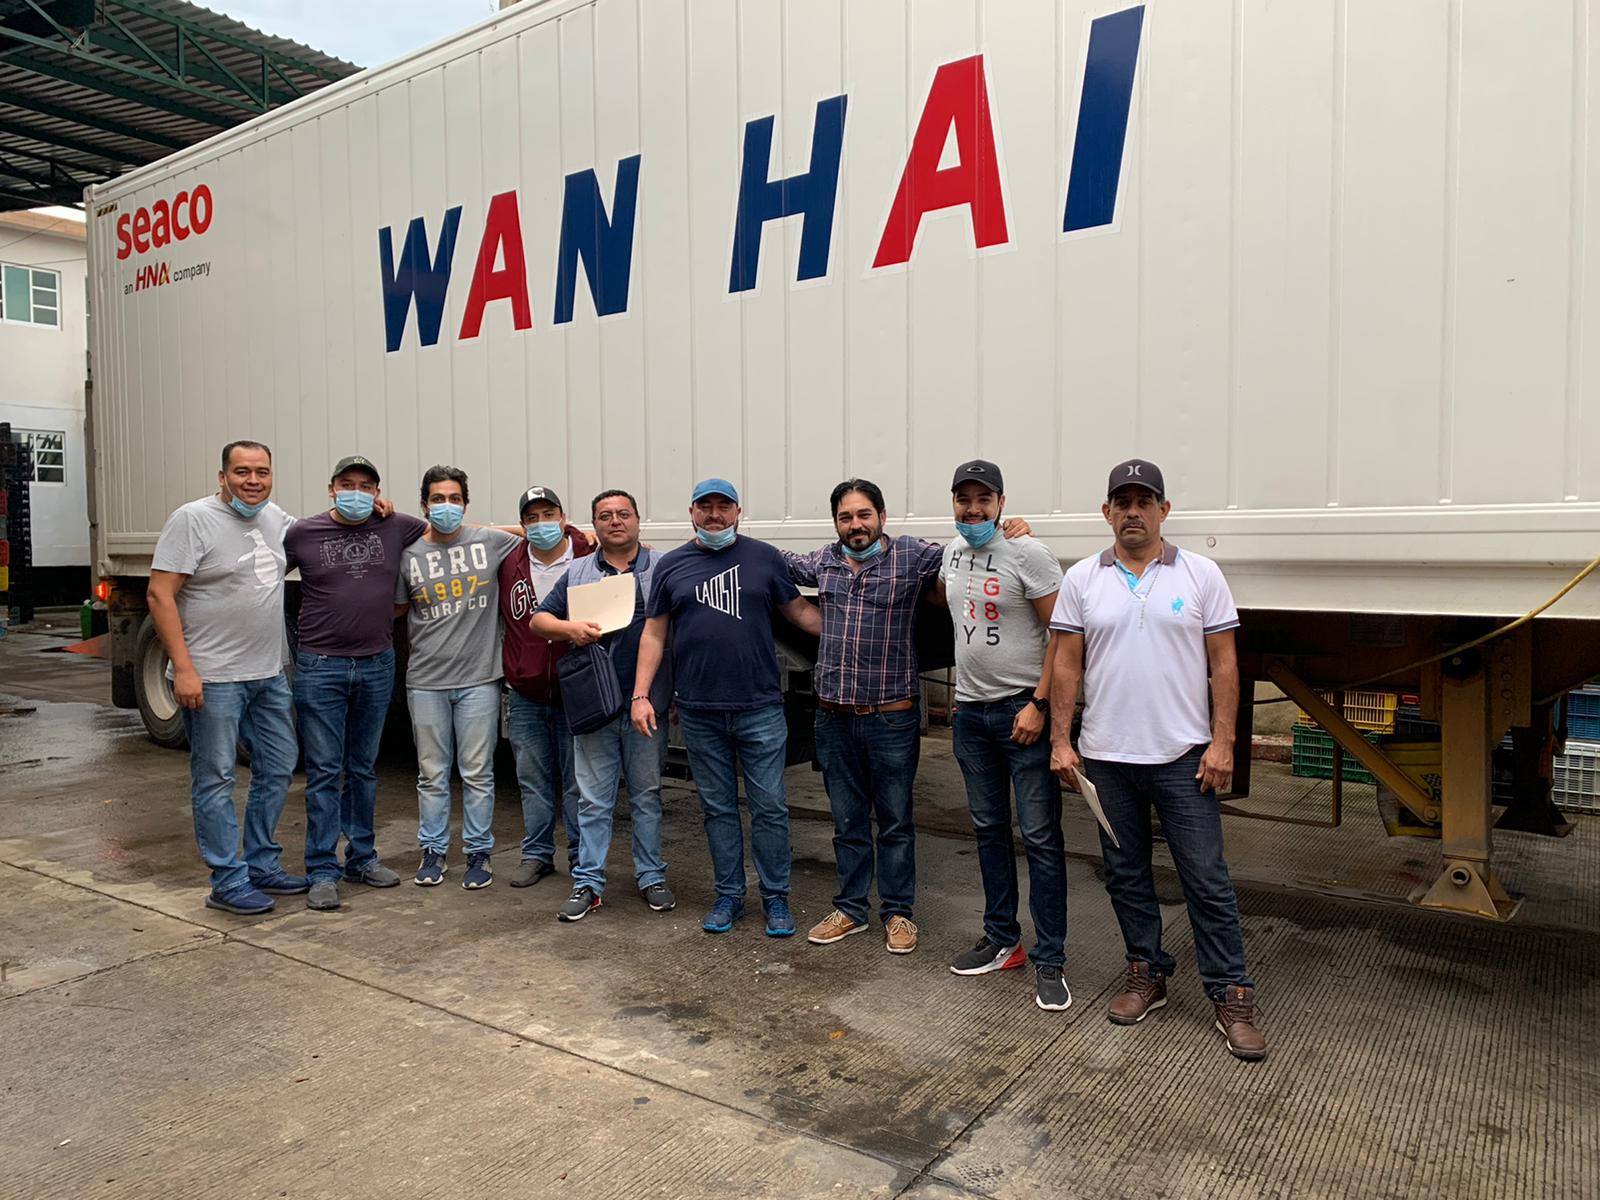 Hong Kong – Mexican Avocado Exports powered by Wan Hai®